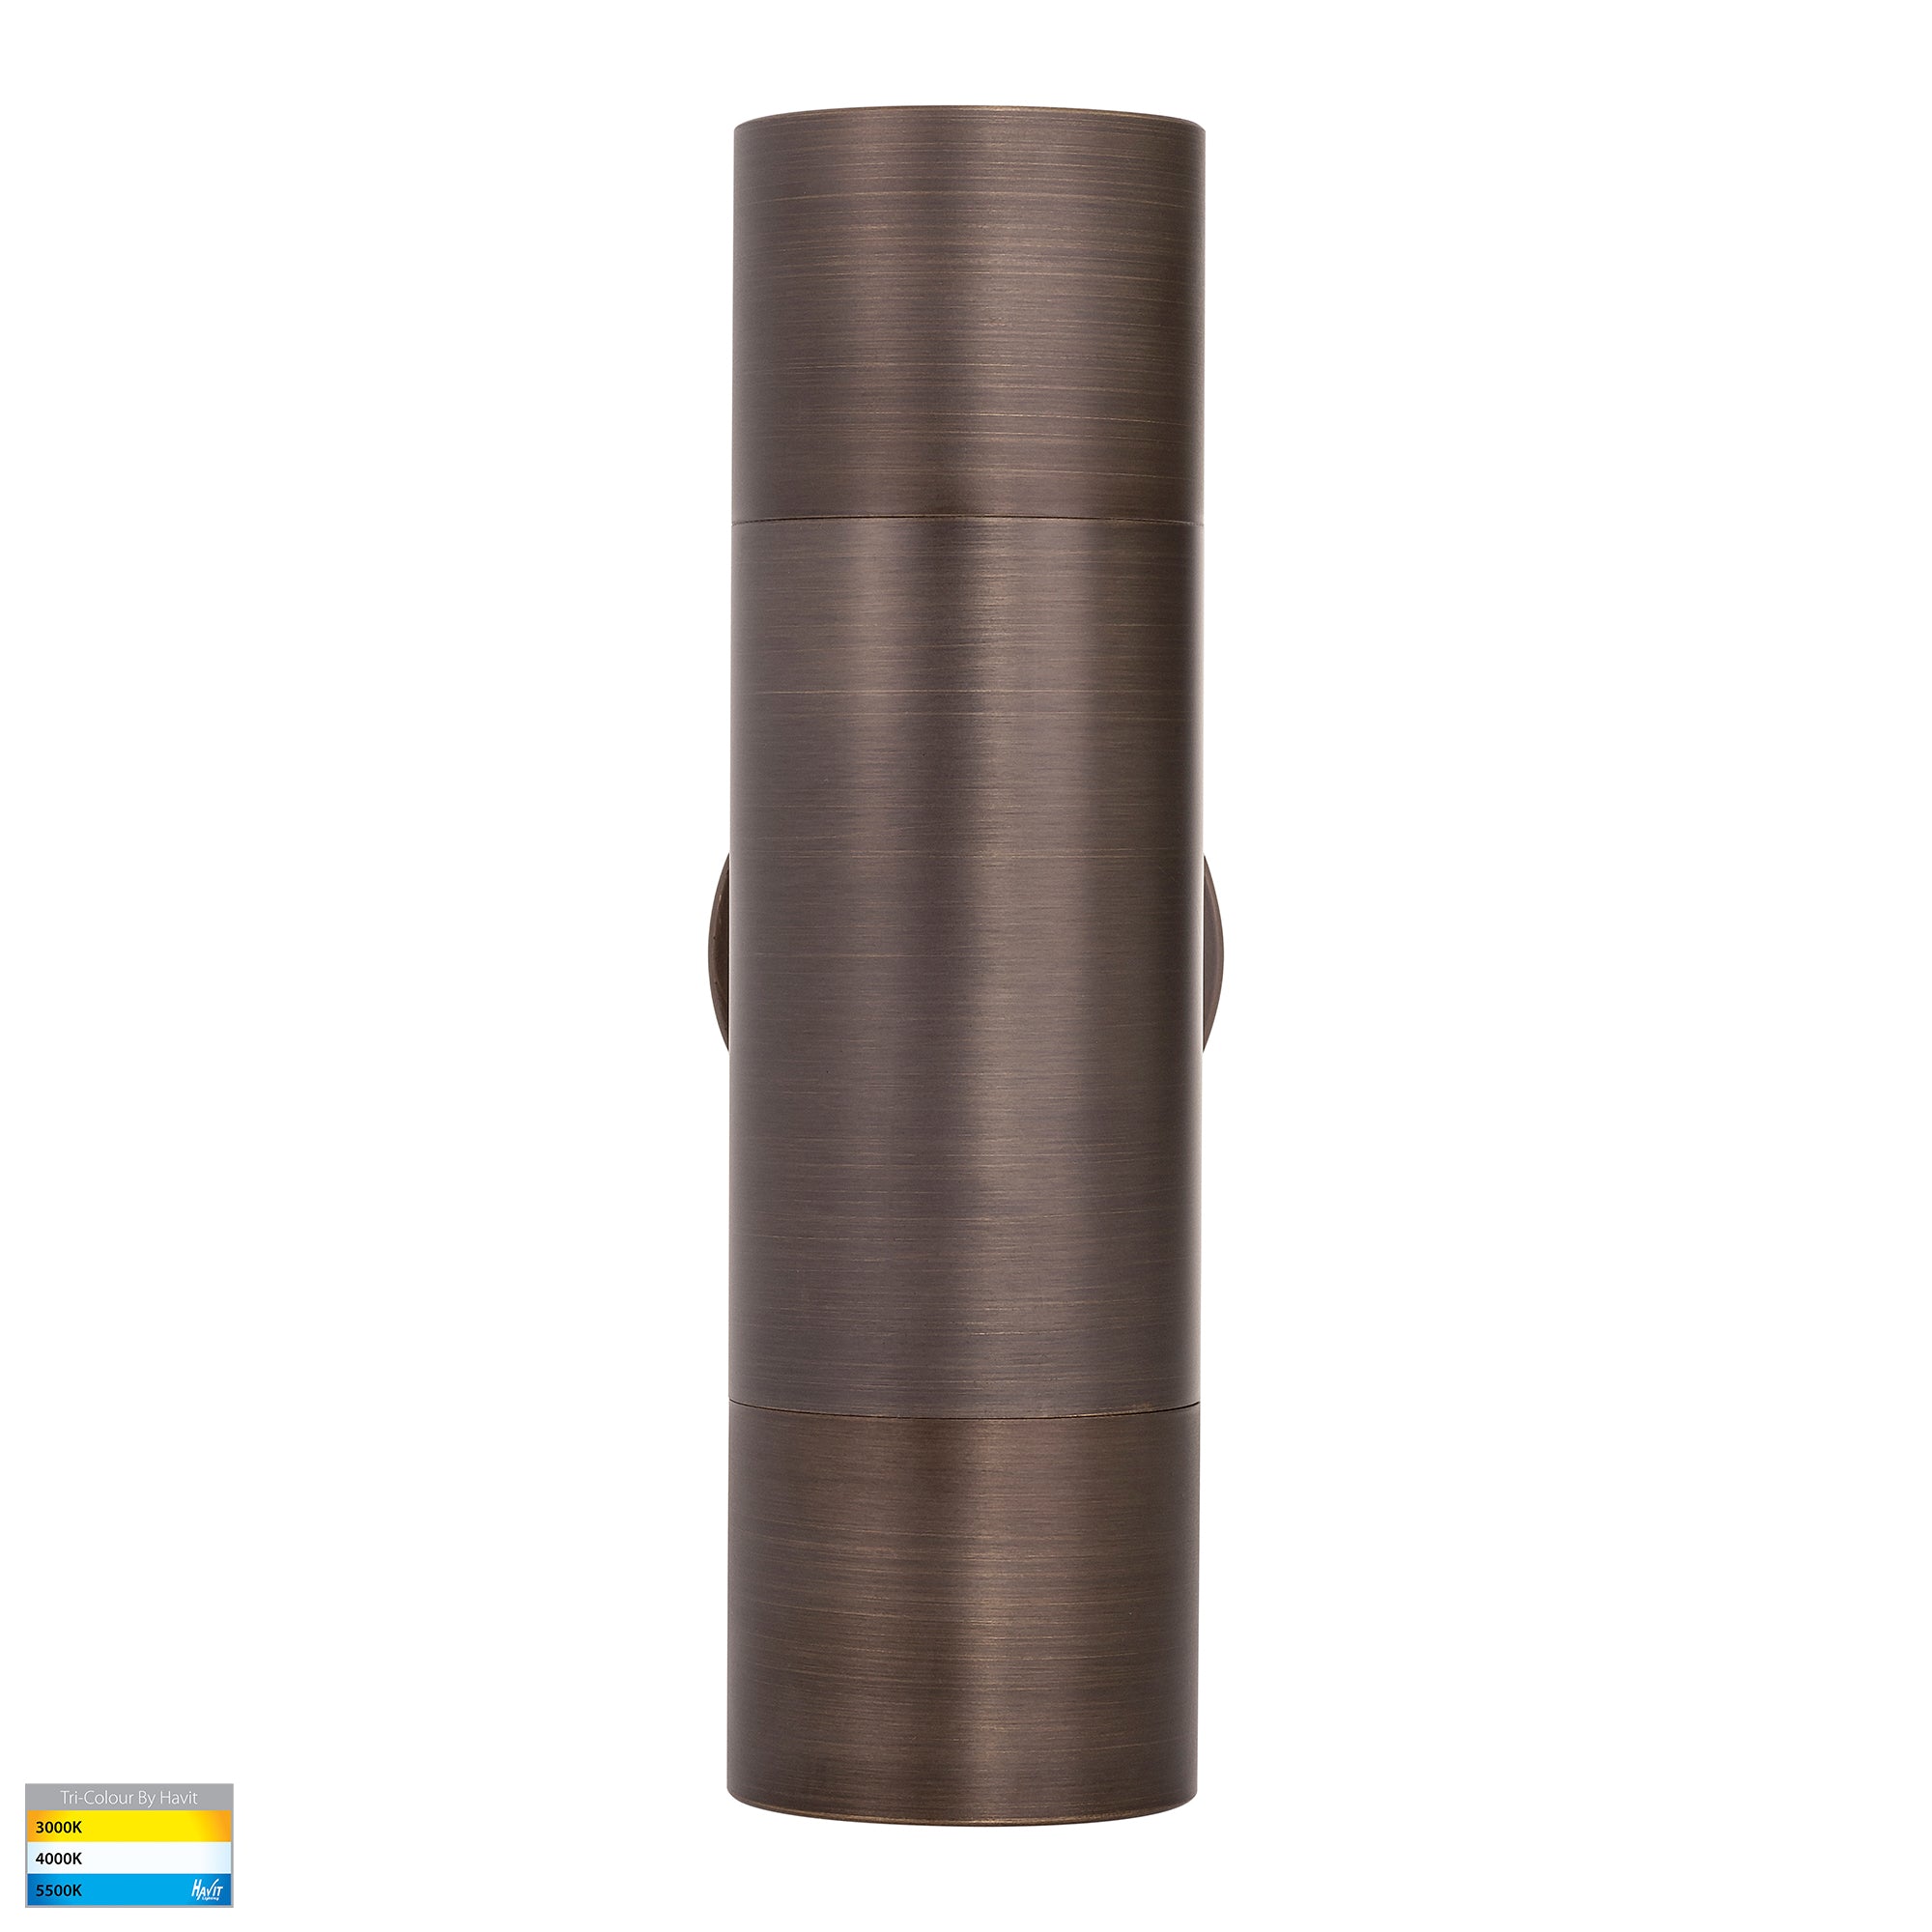 HV1095T-HV1097T - Tivah Antique Brass TRI Colour Up & Down Wall Pillar Lights